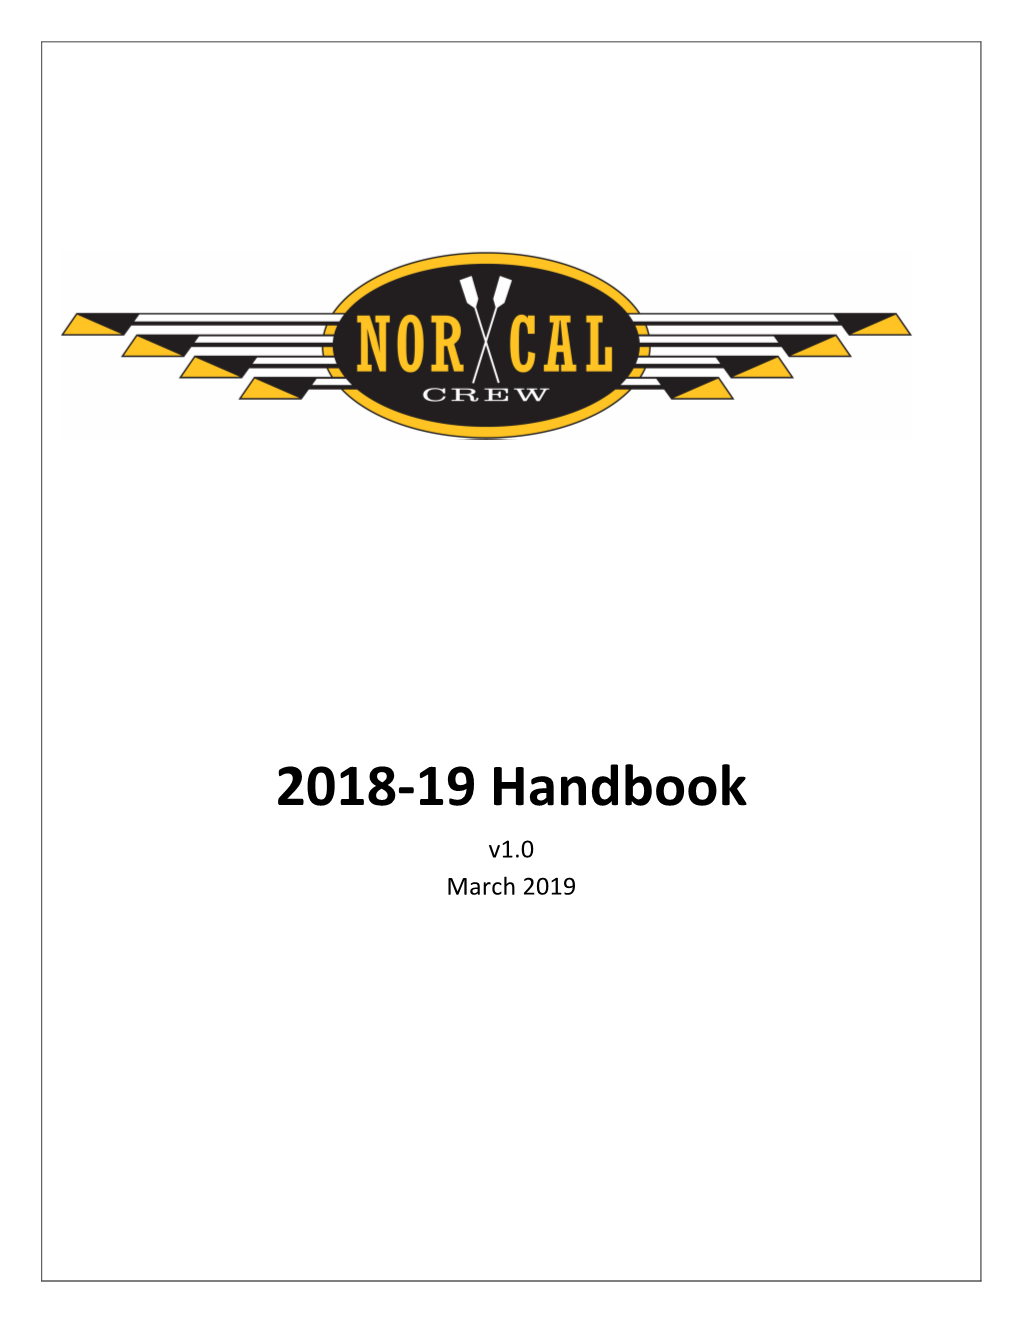 2018-19 Handbook V1.0 March 2019